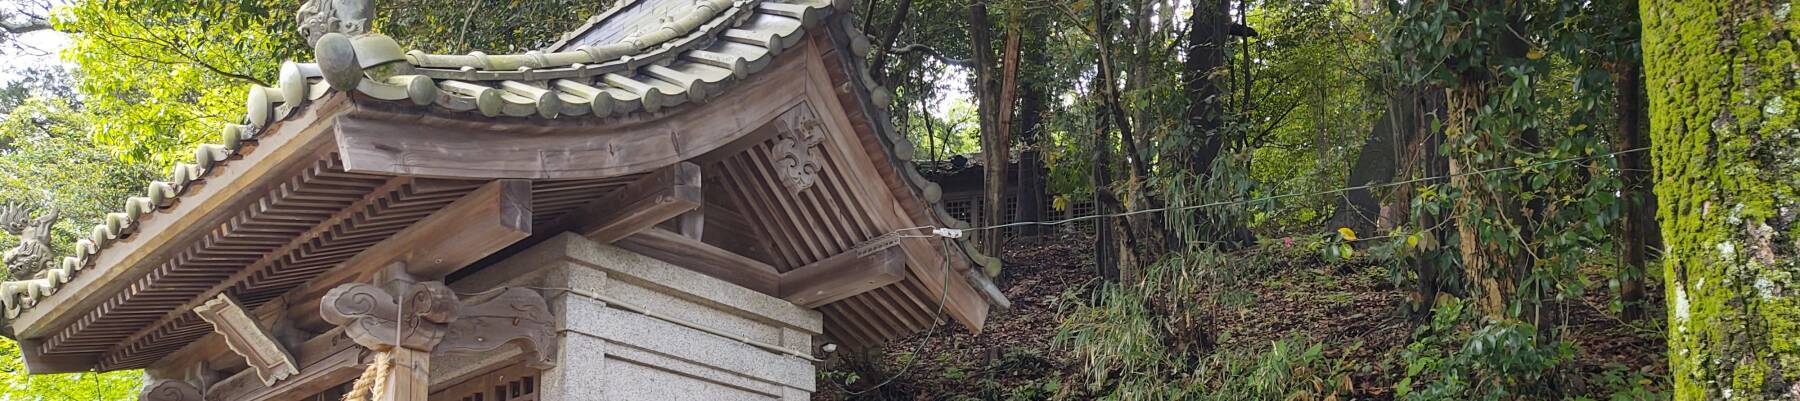 Kanzaki Hachiman Shrine with the Tsukiyama kofun in the background.